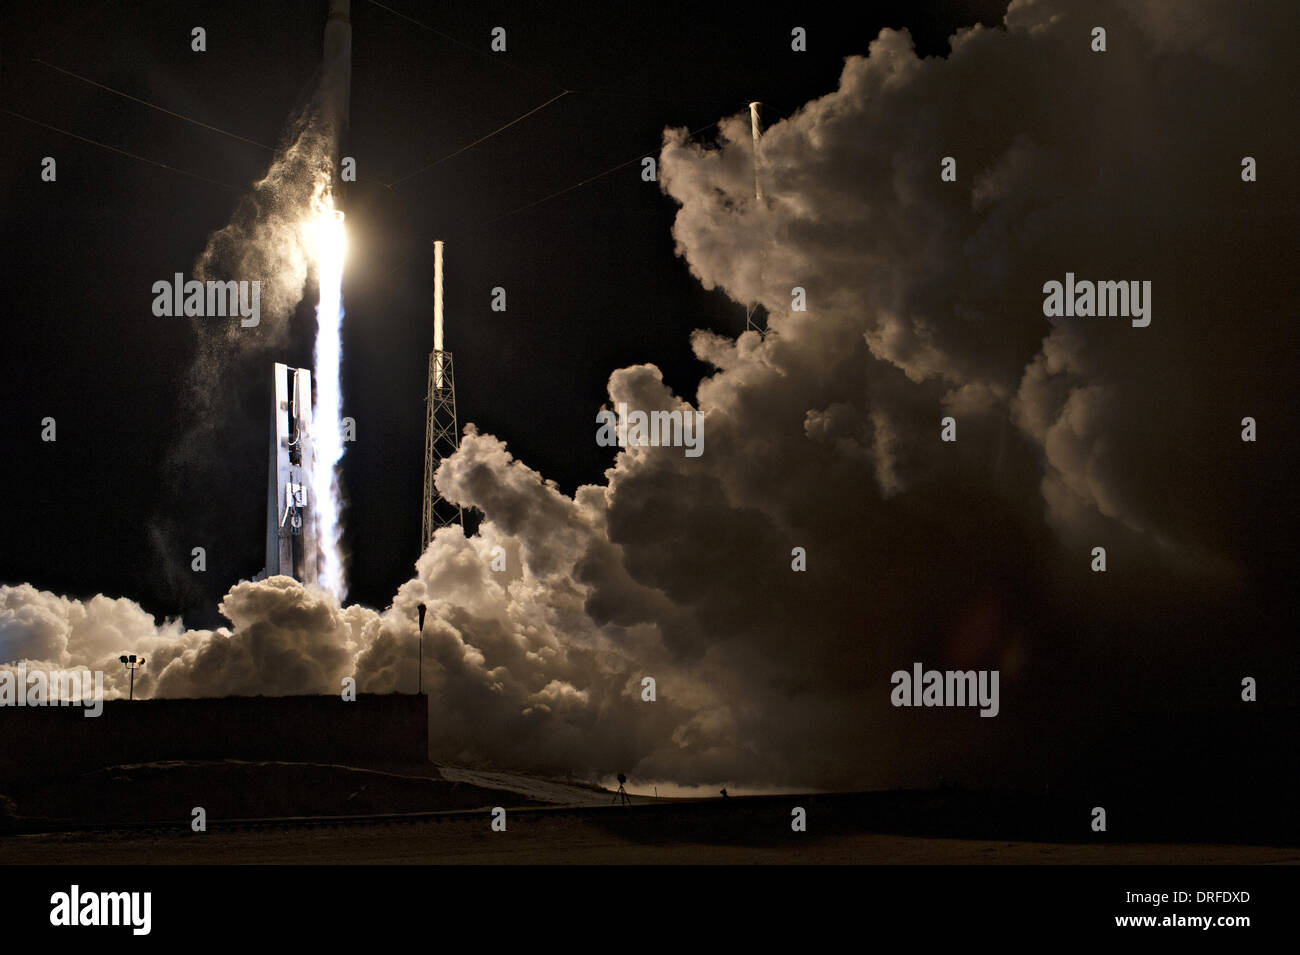 United Launch Alliance Atlas V rocket con la NASA il Tracking e relè dati veicolo spaziale satellitare in cima solleva da Space Launch Complex 41 Gennaio 24, 2014 in Cape Canaveral, FL. Foto Stock